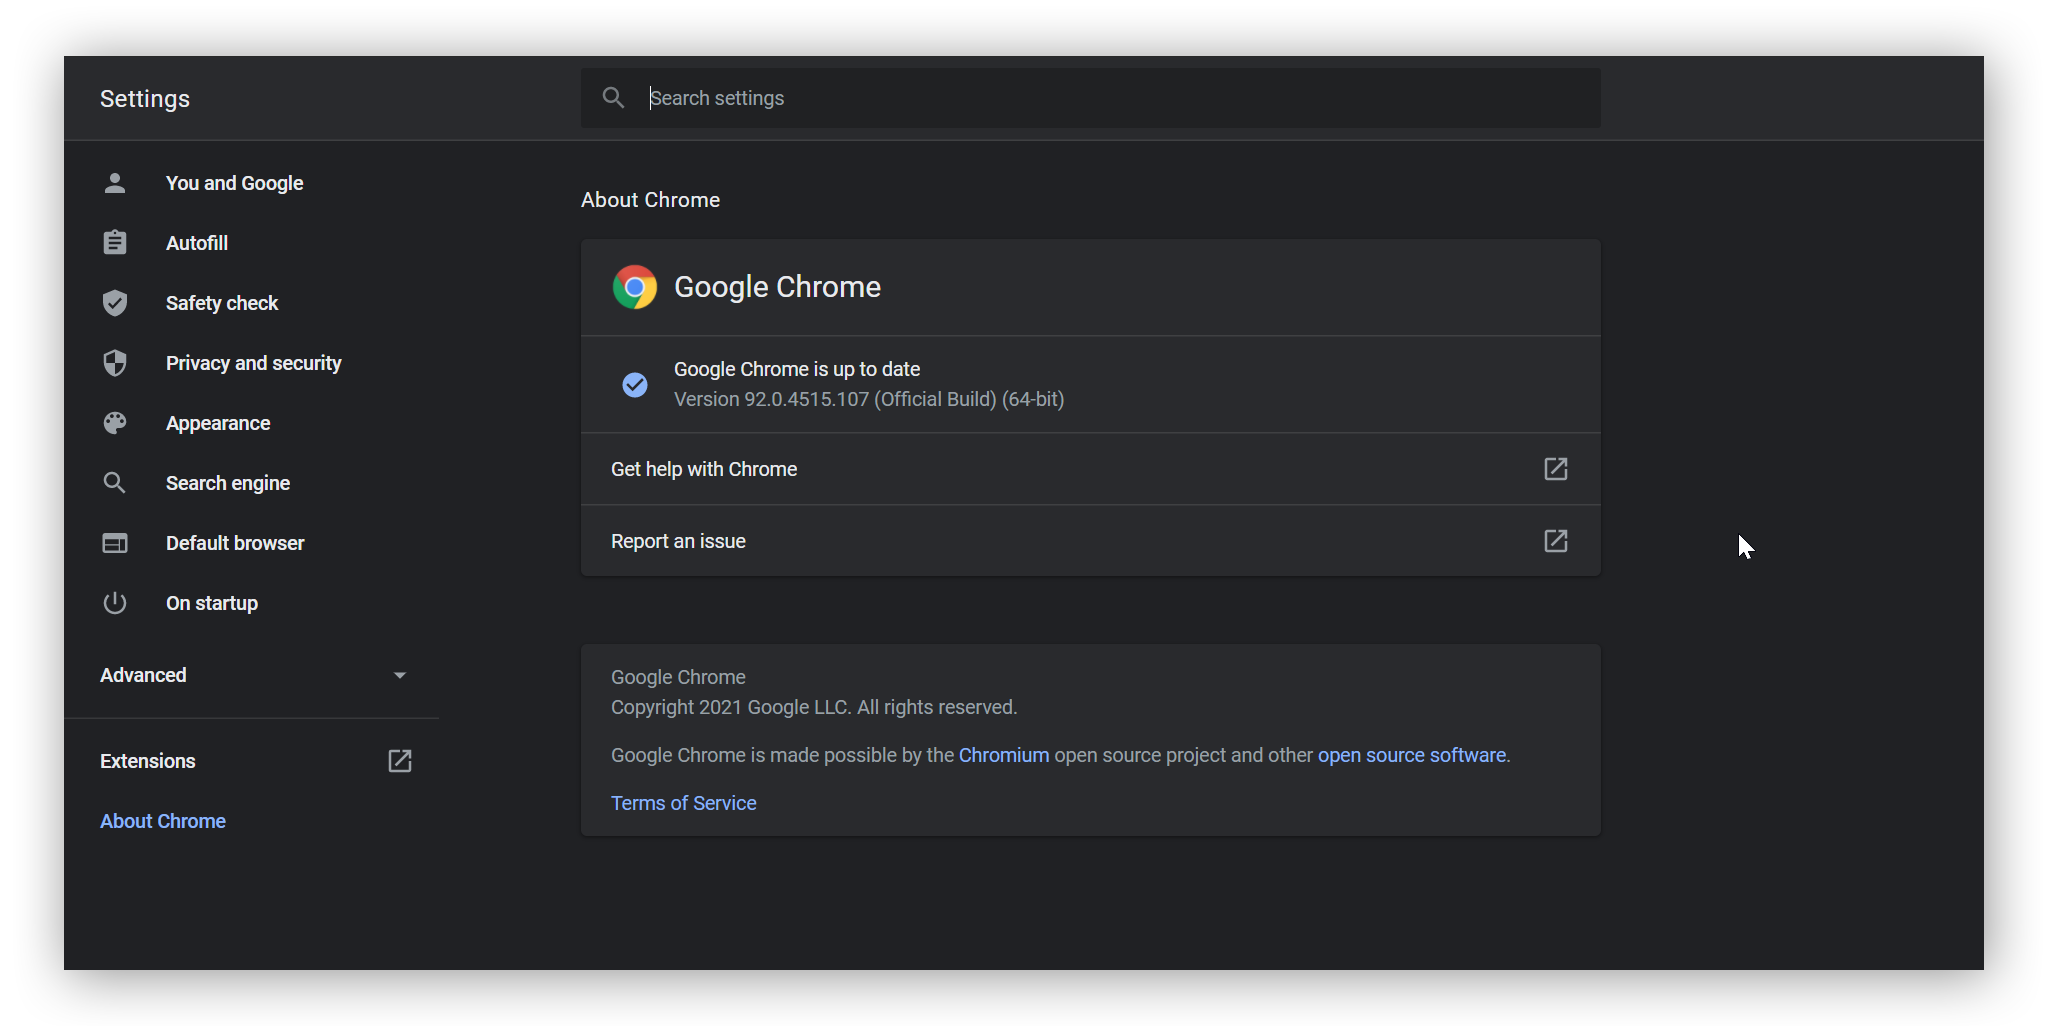 Aparece el ajuste Acerca de Google Chrome, que muestra que Google Chrome está actualizado.